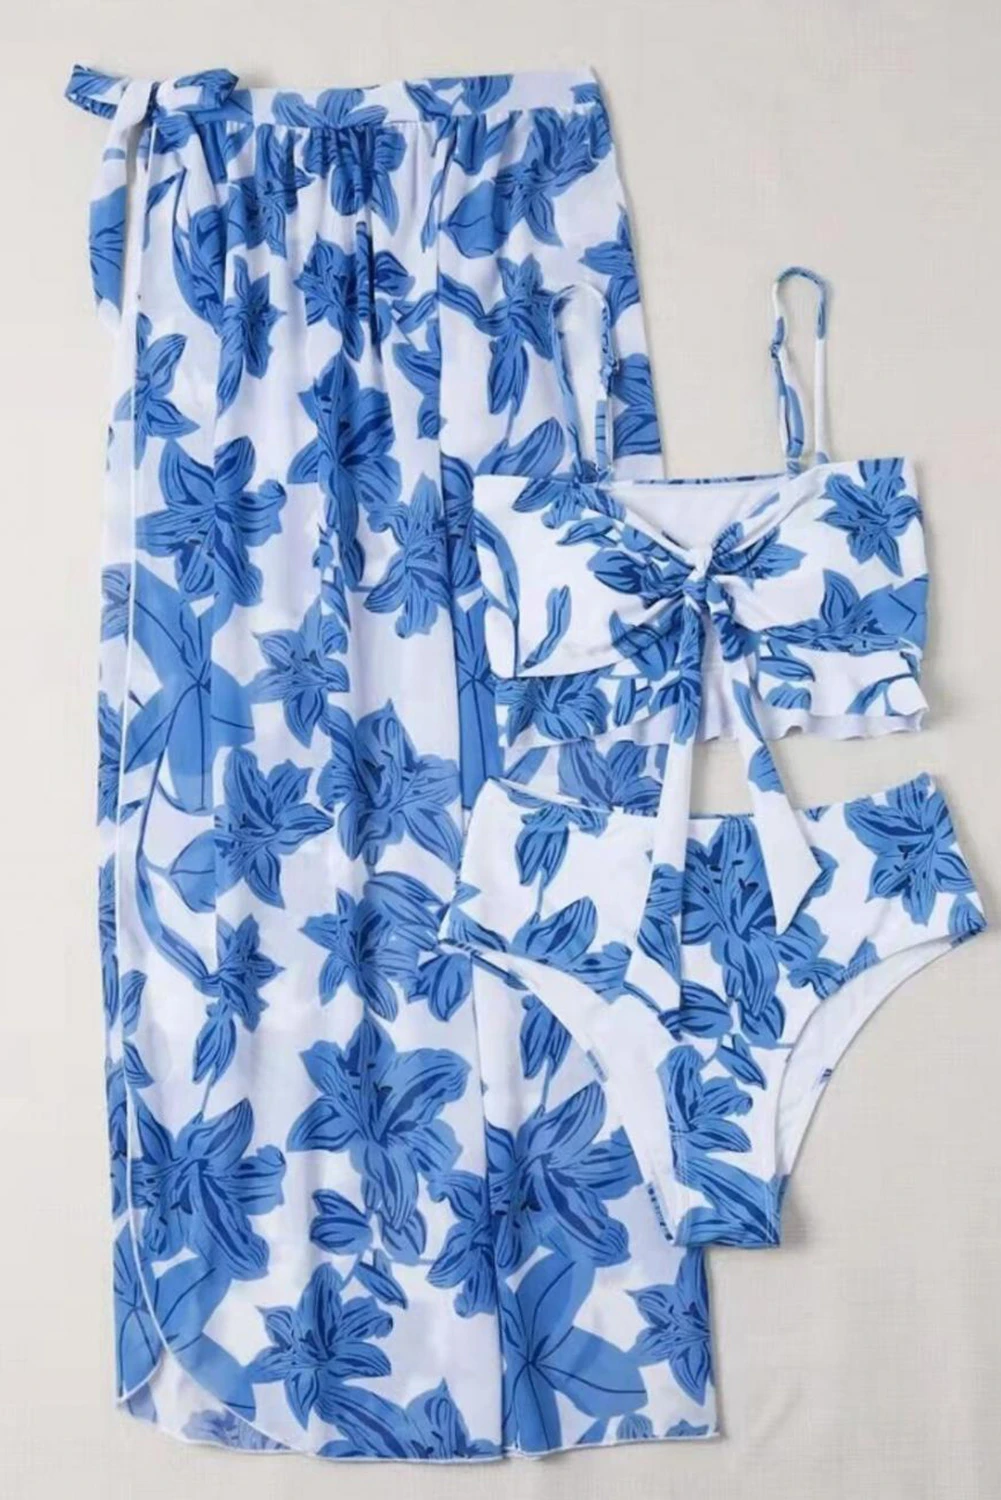 天蓝色 3 件套花卉扭纹比基尼连罩式泳衣 LC481426